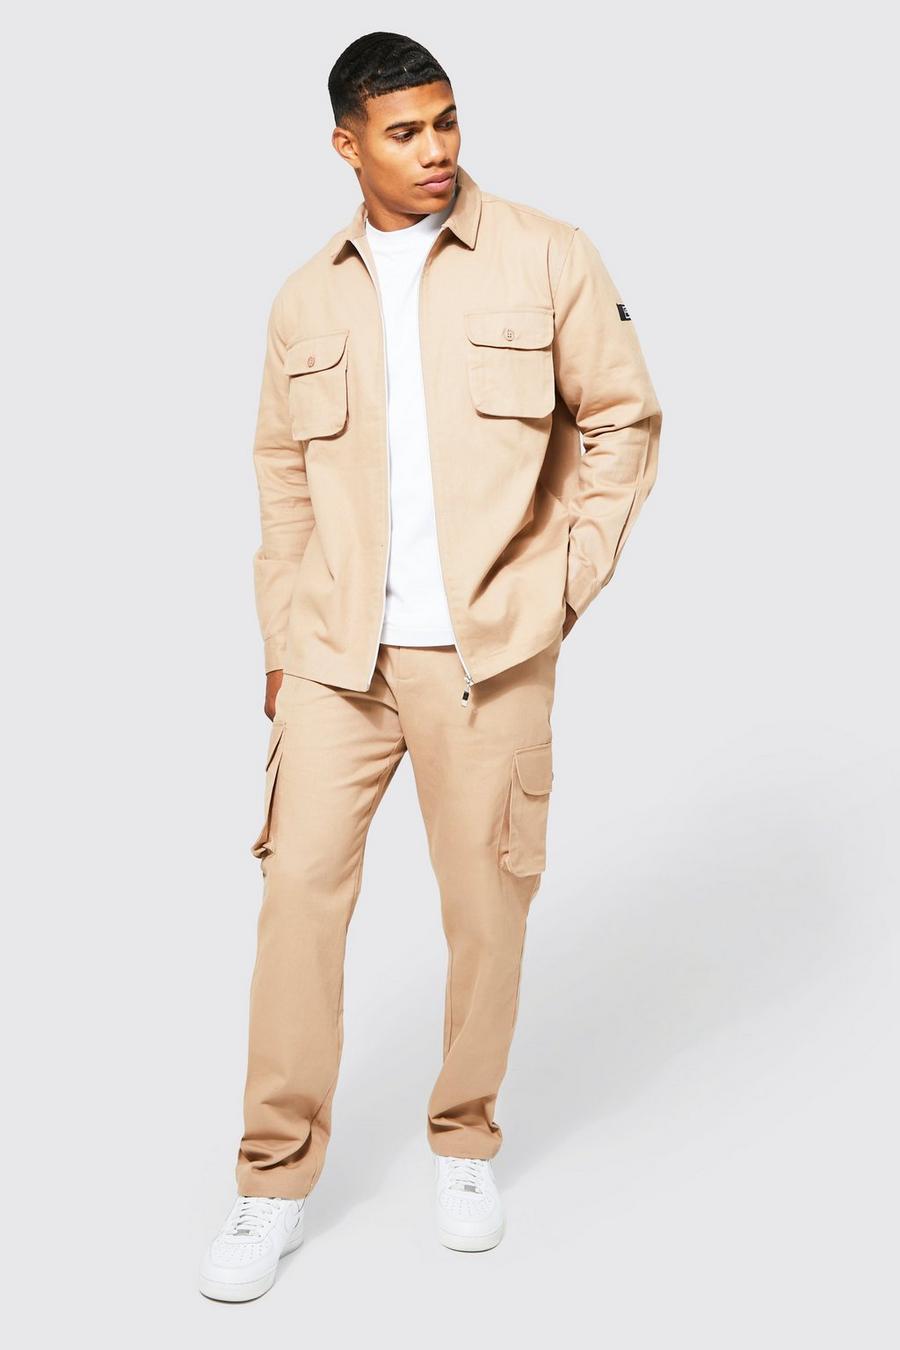 אפור חום beige סט מכנסיים וחולצה בסגנון שימושי עם רוכסן